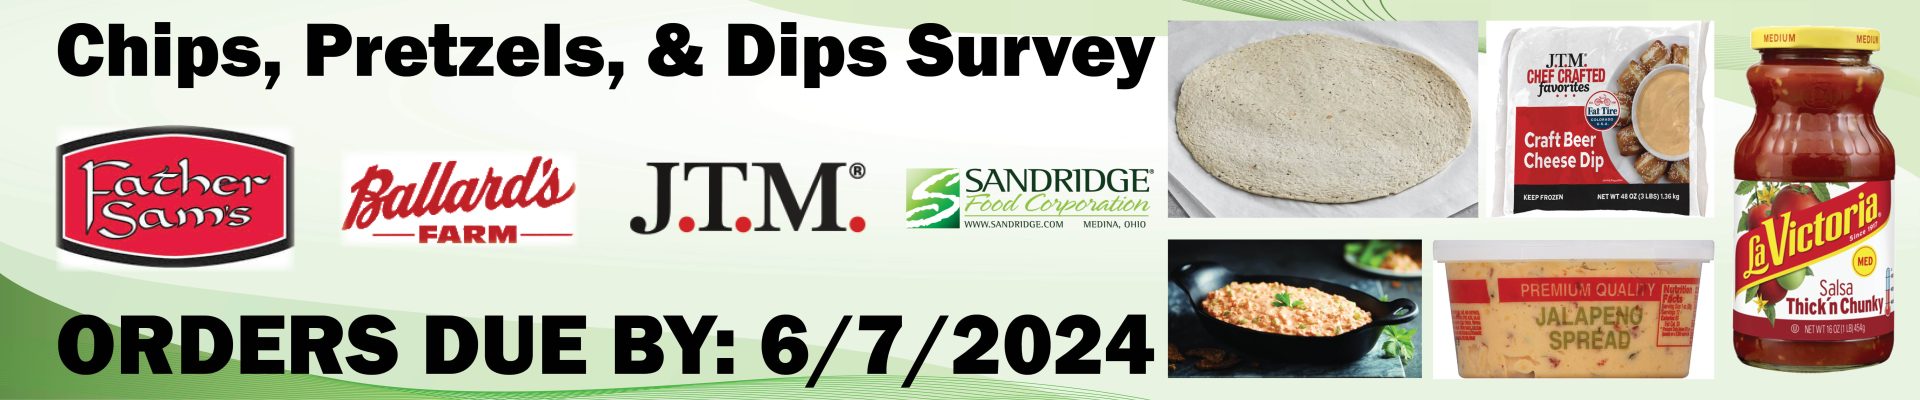 Chips Pretzels Dips Survey